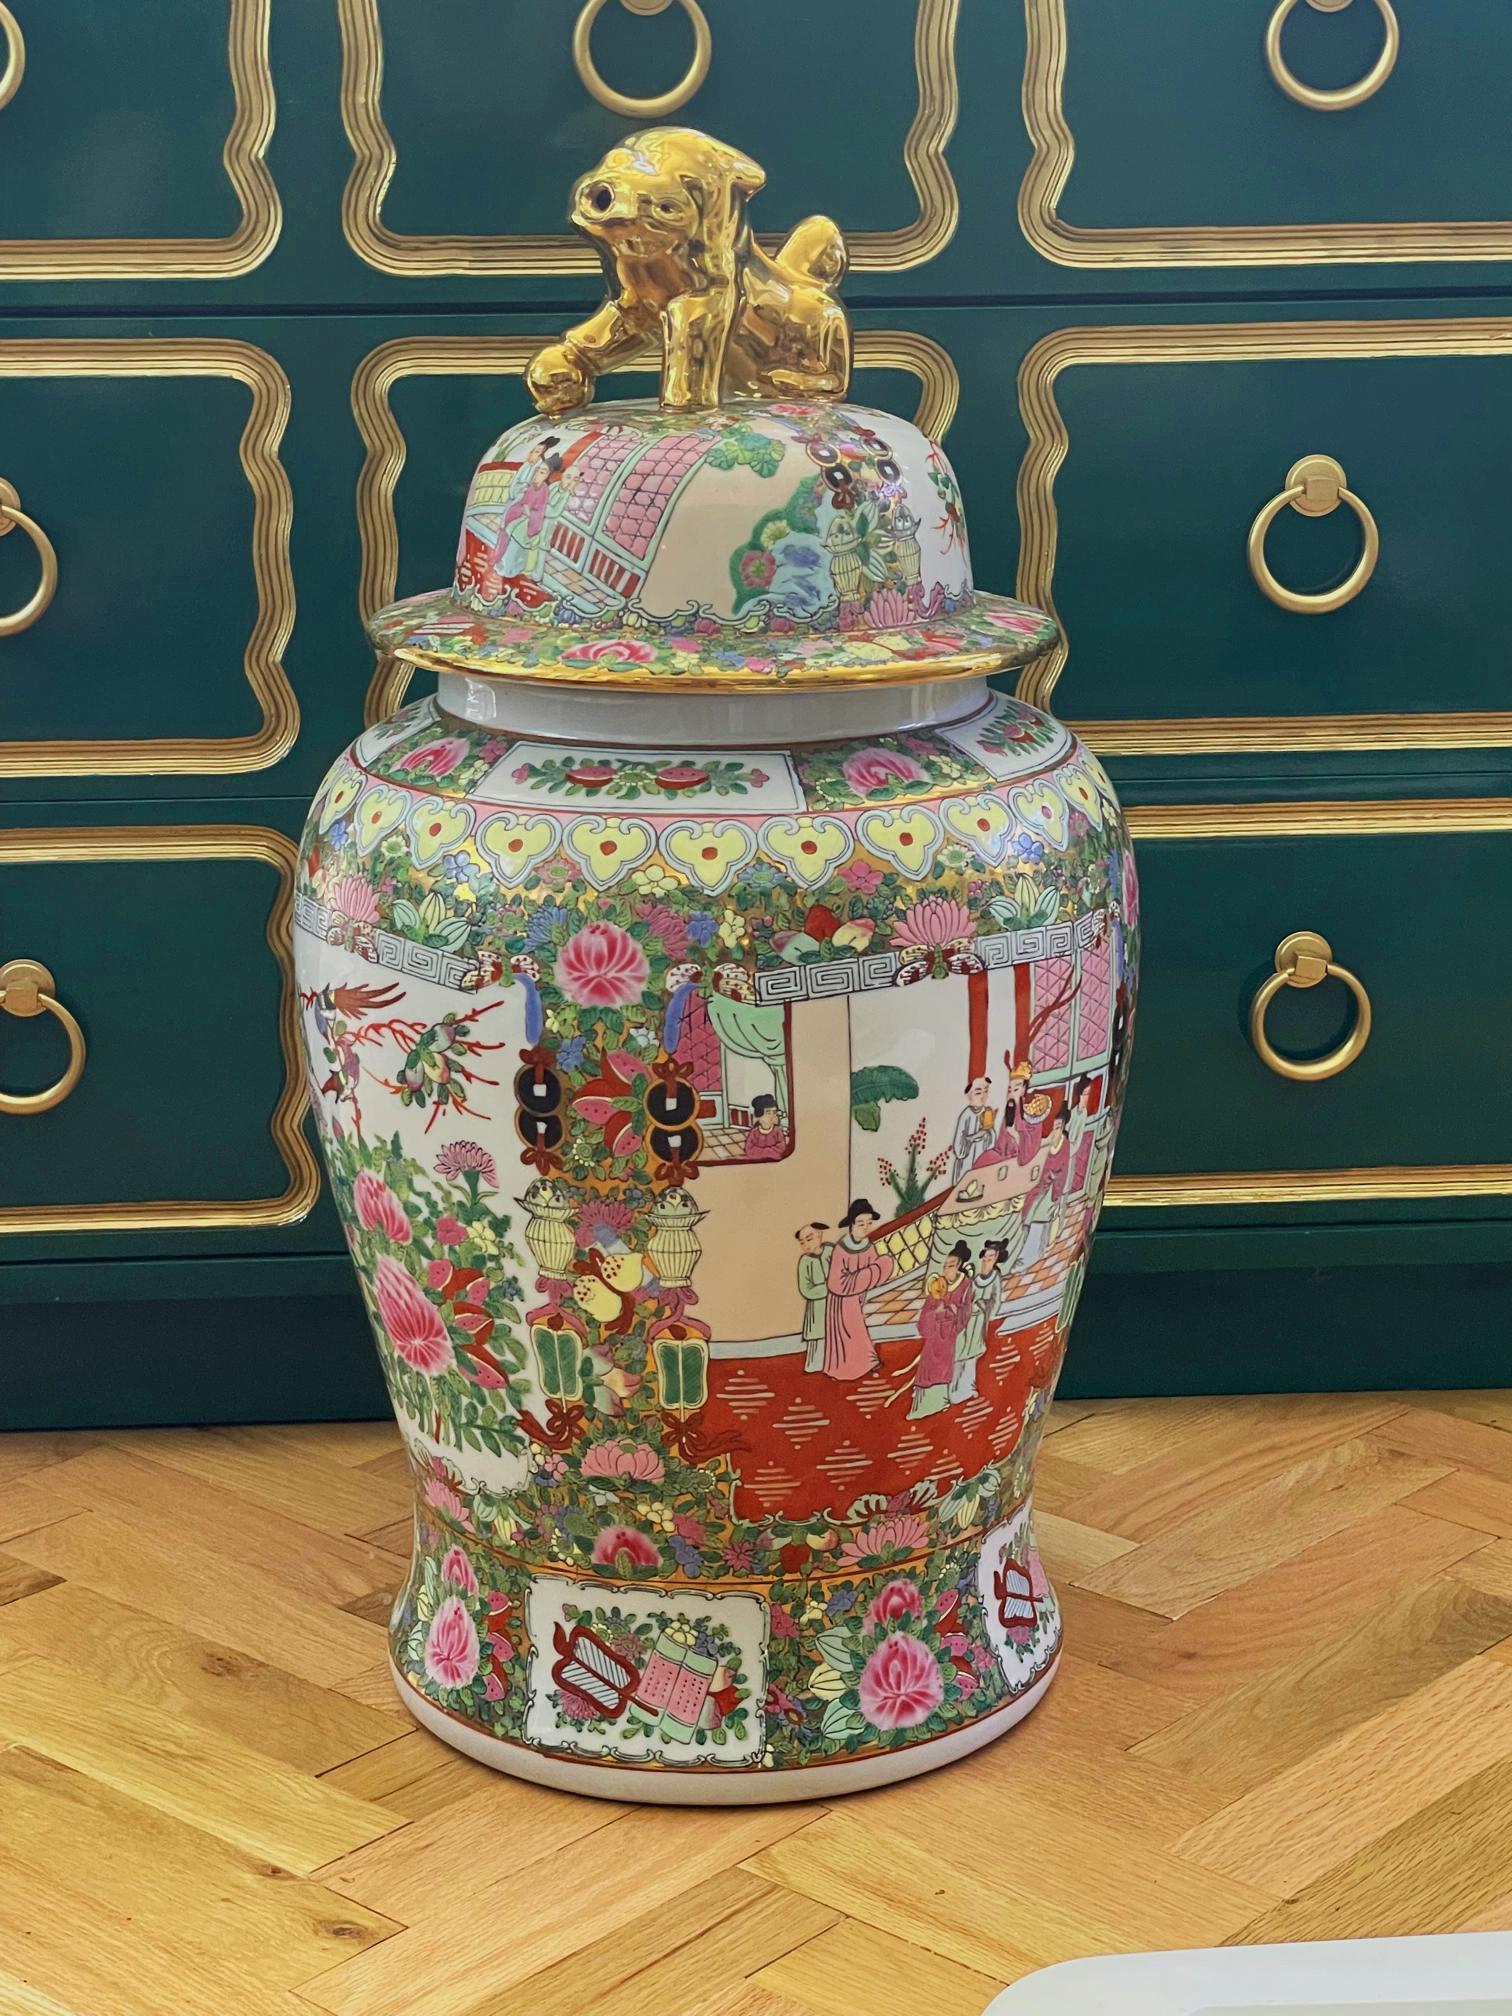 Ce grand vase ou urne en céramique présente un corps et un couvercle peints à la main en chinoiserie, représentant des scènes orientales ainsi que des oiseaux et de la flore. Le couvercle bombé est orné d'un foo dog doré en guise de poignée. La